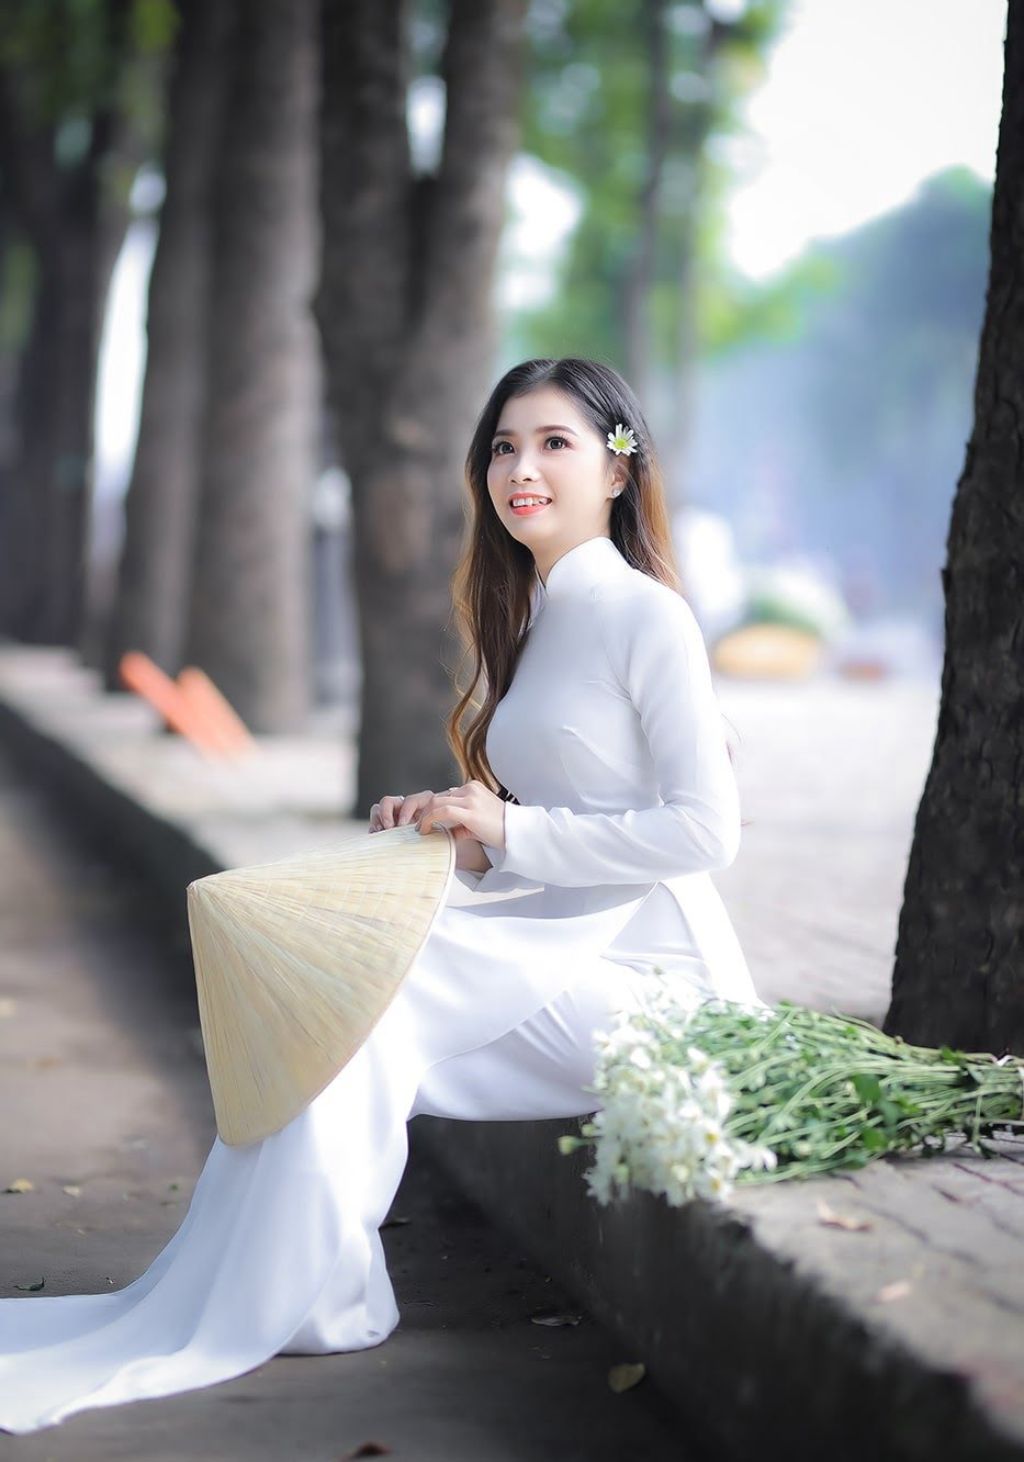 Trải nghiệm dịch vụ chụp ảnh áo dài cực chất tại Sài Gòn